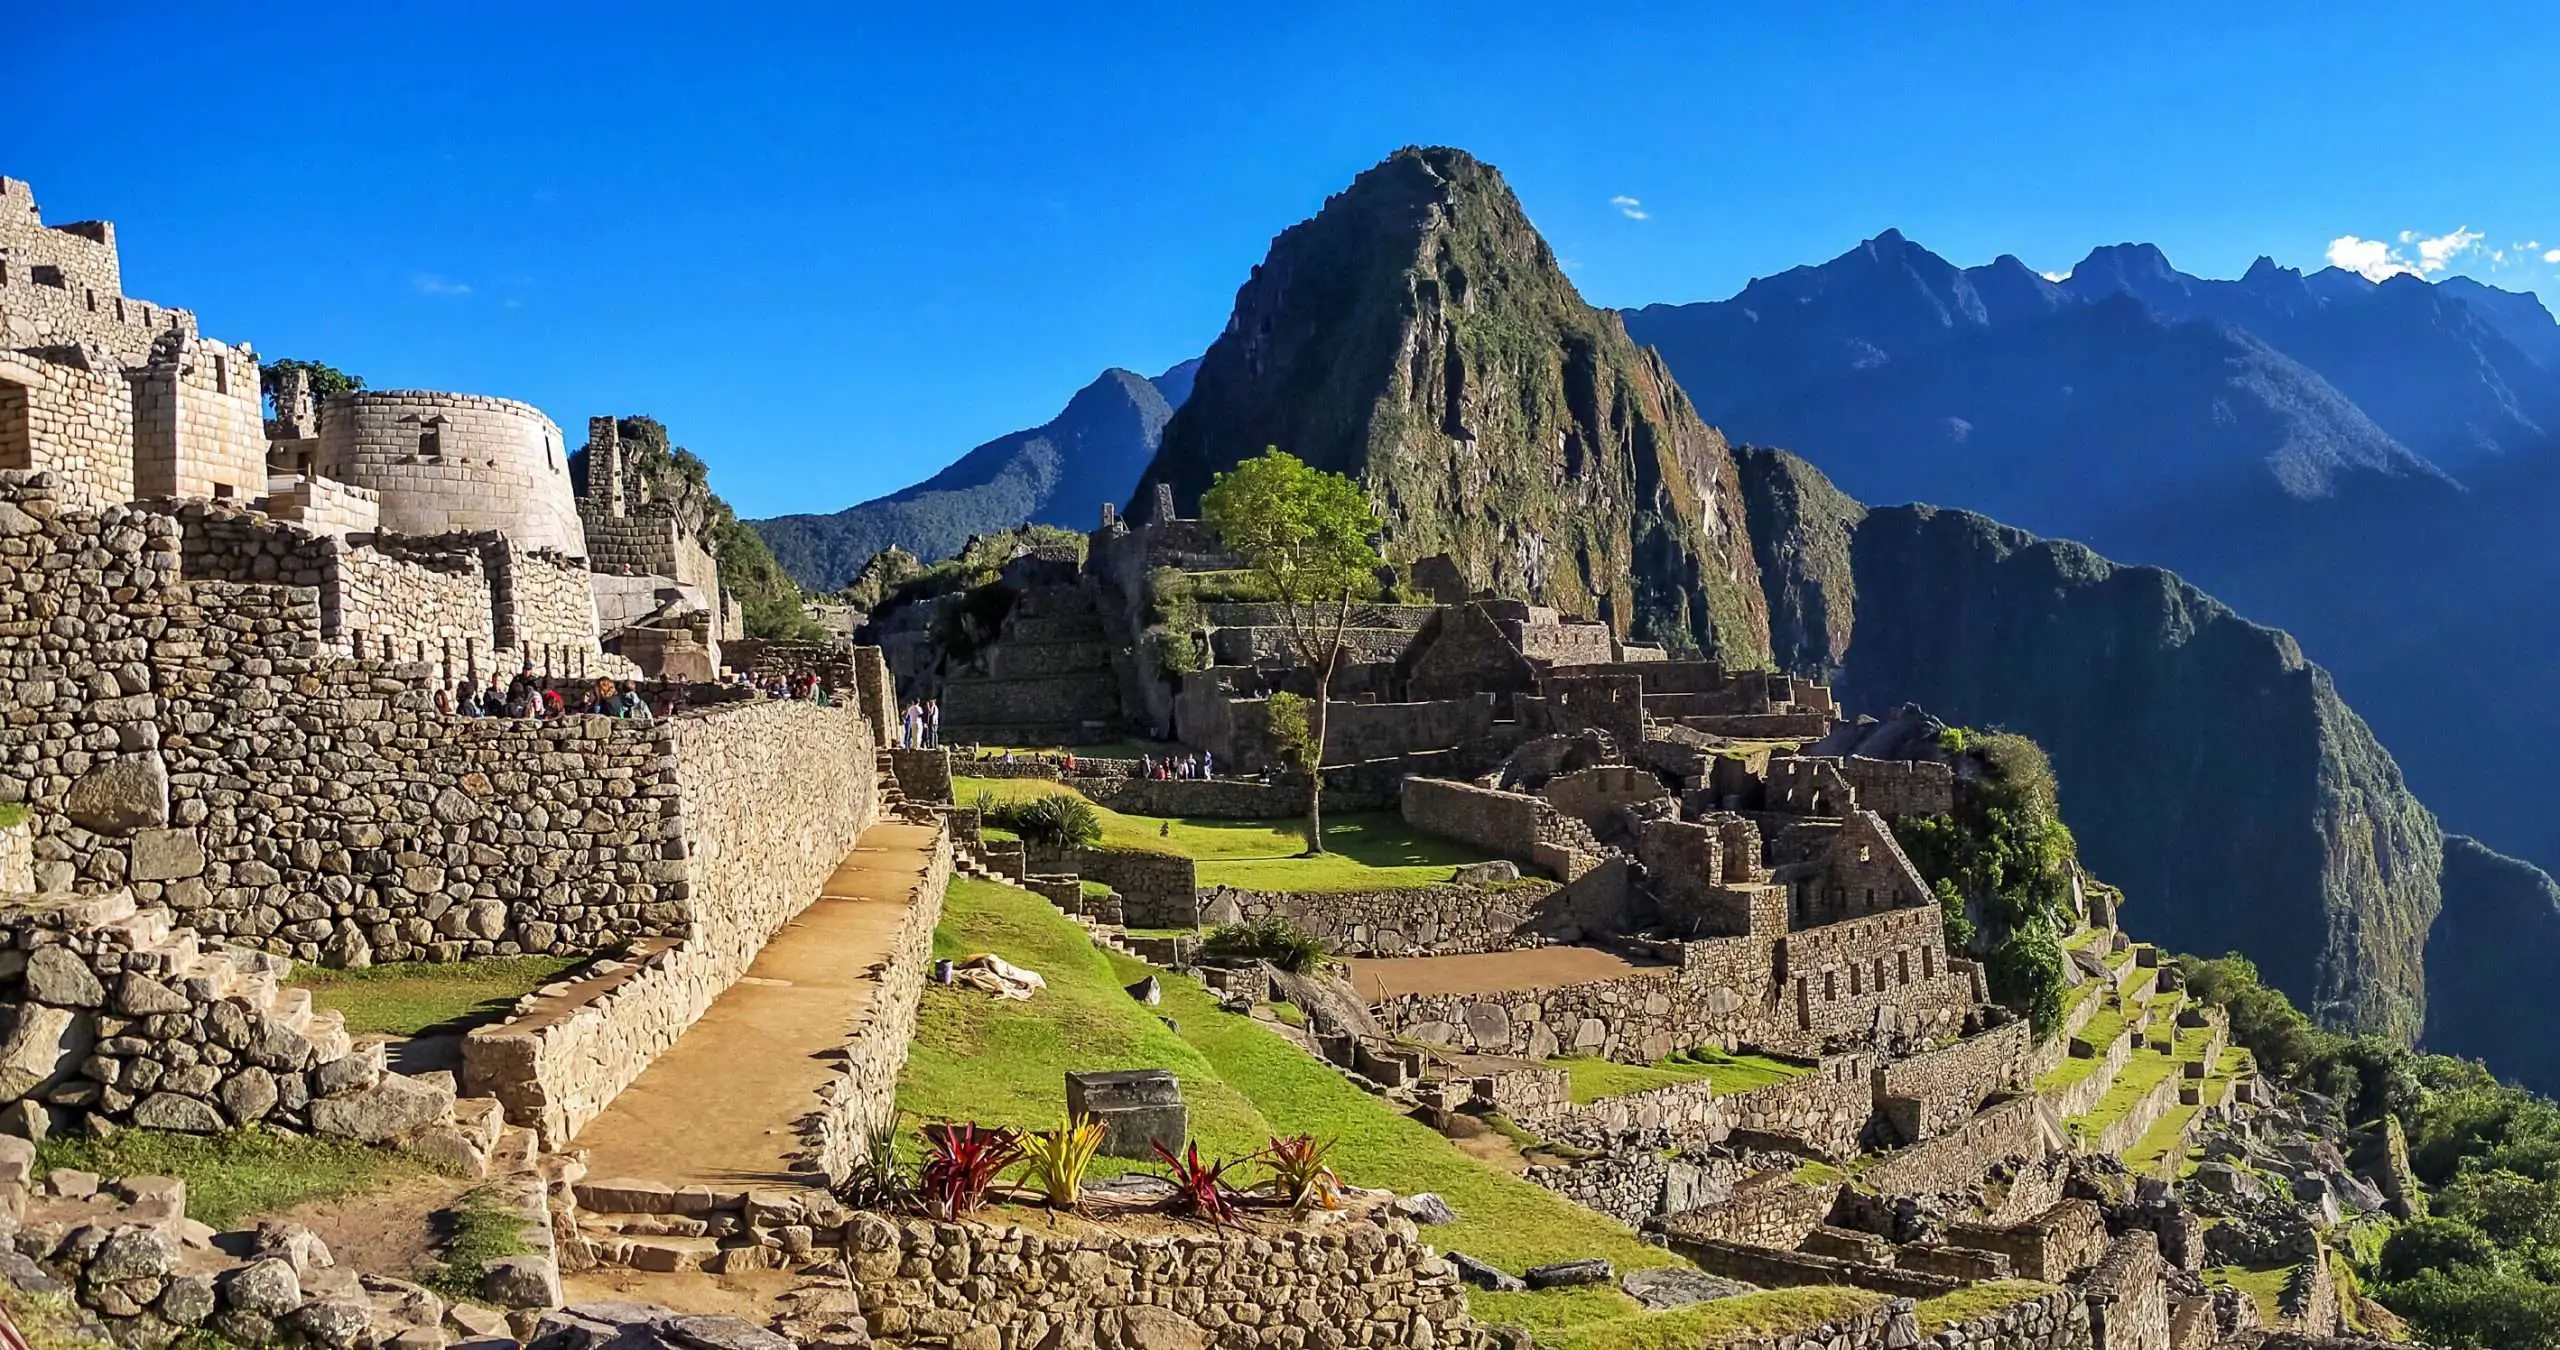 Tours to Machu Picchu & Trekking